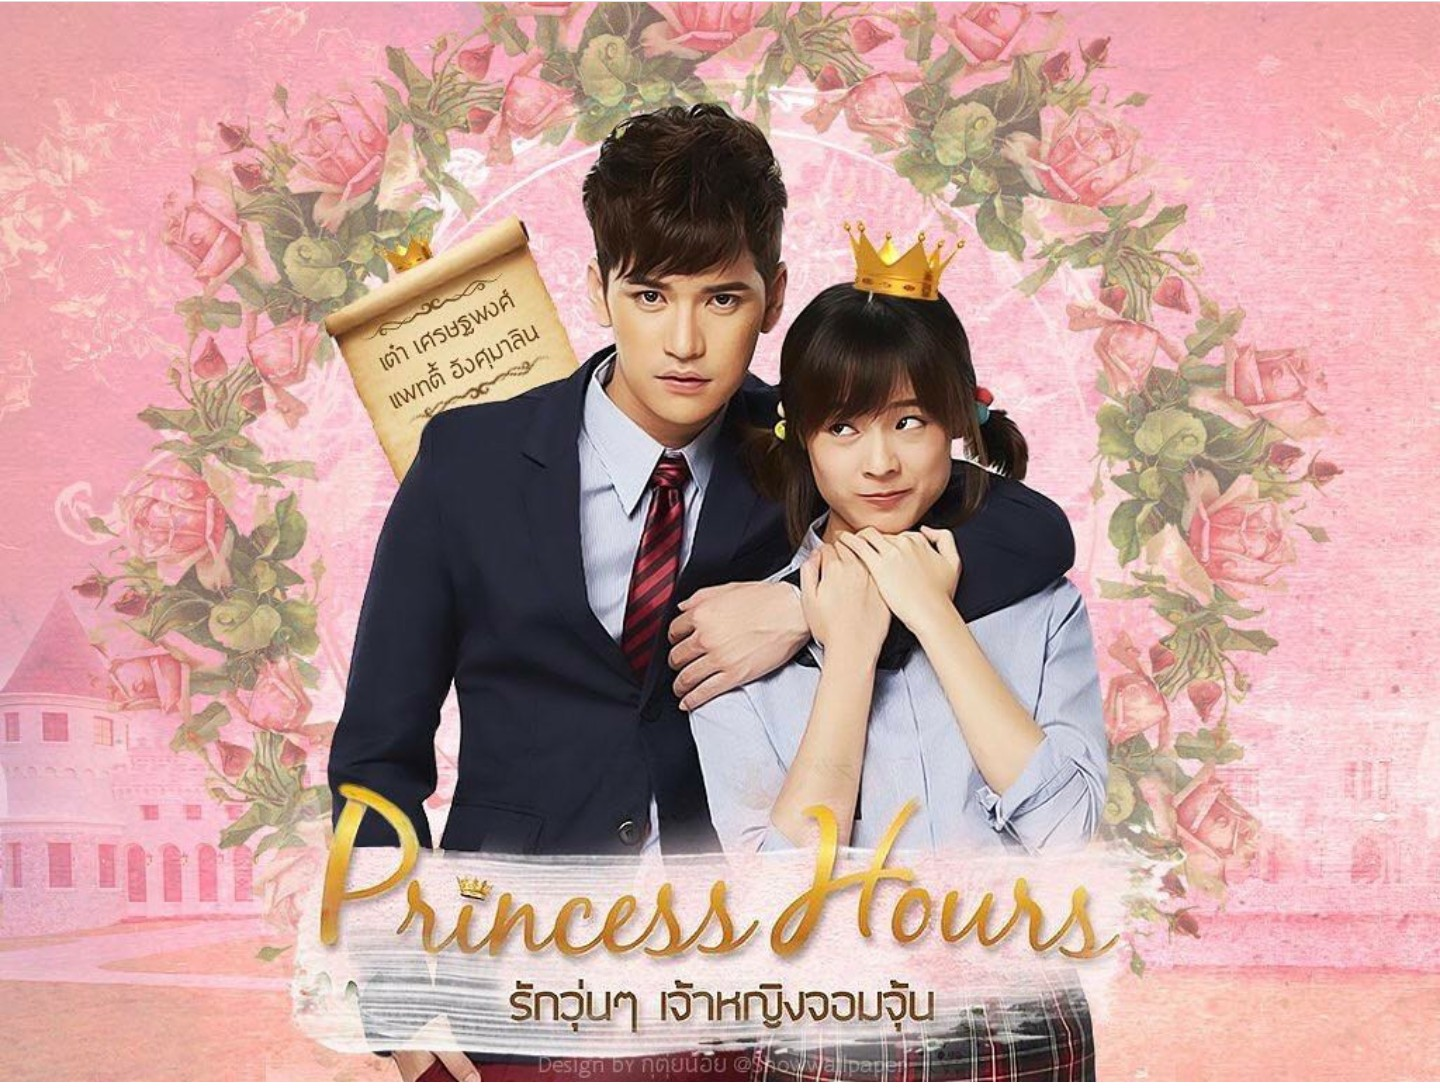 Дорамы тайланд школа. Дорама дворец принцесса Тайланд. Princess hours дорама. Моя принцесса дорама Корея.